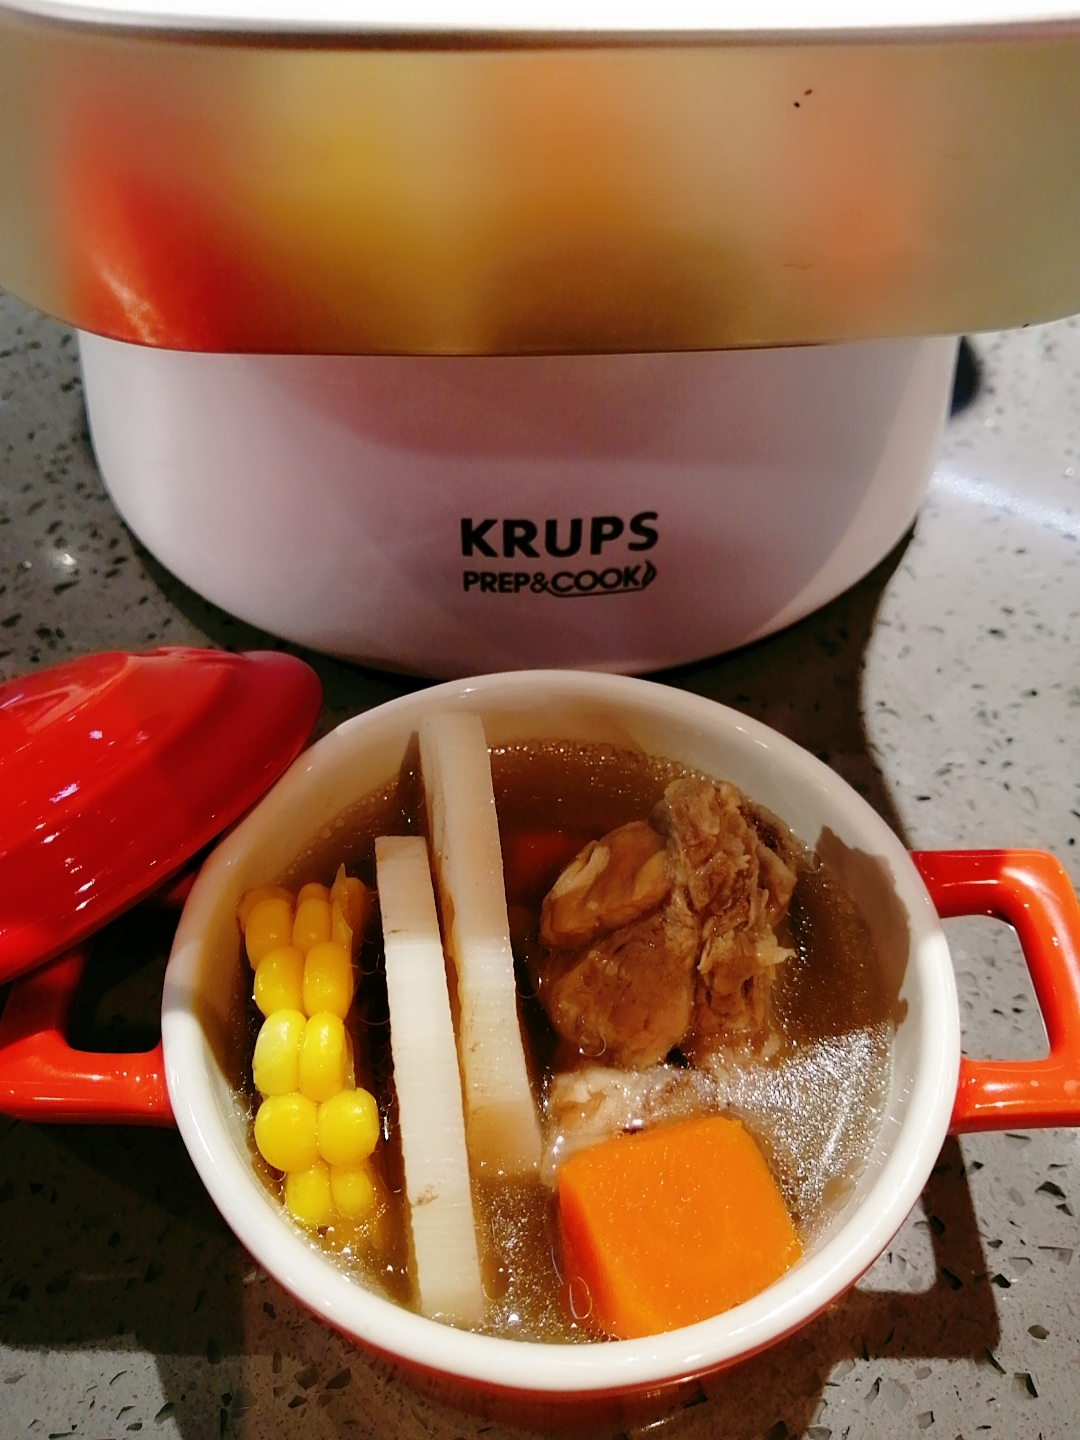 莲藕排骨汤的做法